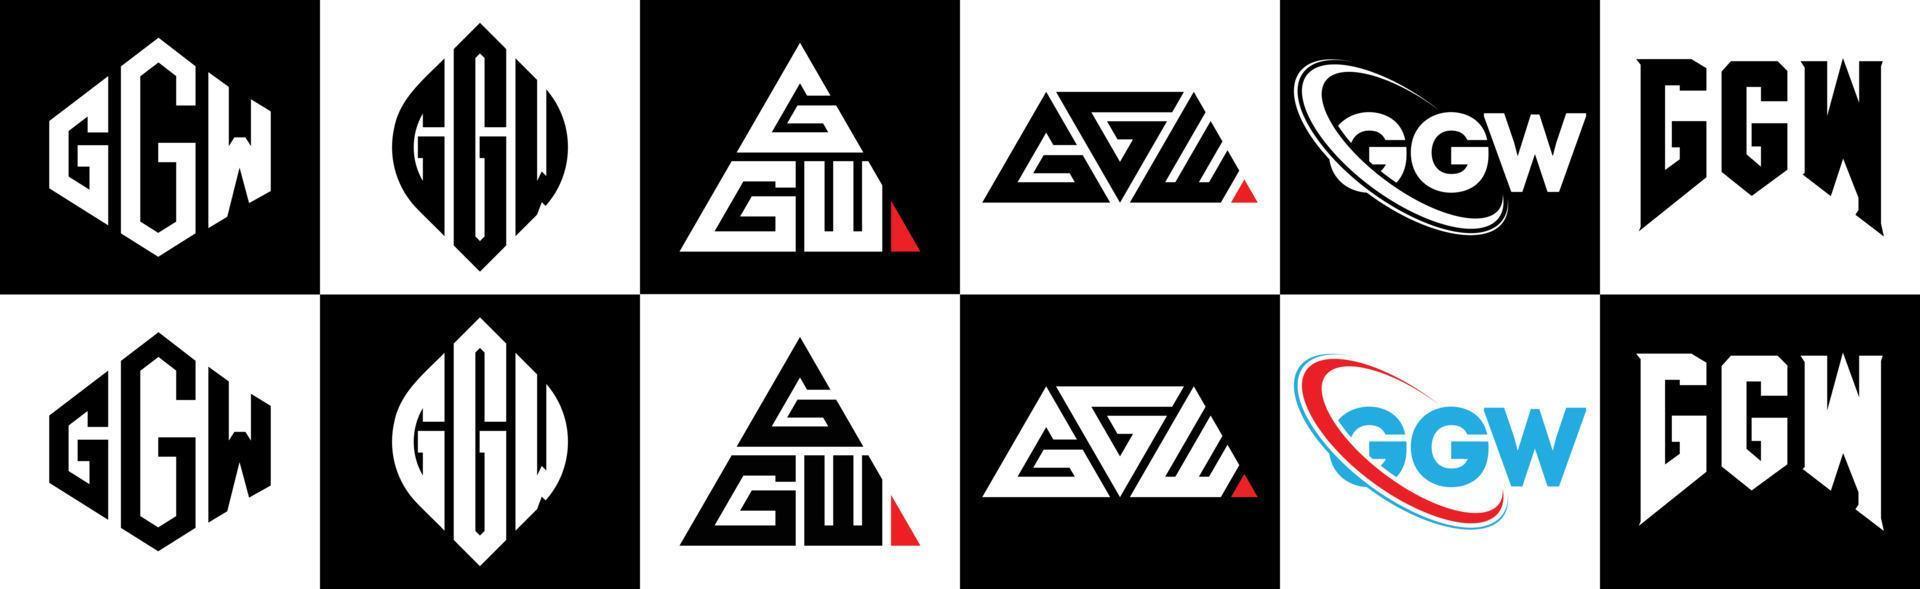 création de logo de lettre ggw en six styles. polygone ggw, cercle, triangle, hexagone, style plat et simple avec logo de lettre de variation de couleur noir et blanc dans un plan de travail. logo minimaliste et classique ggw vecteur